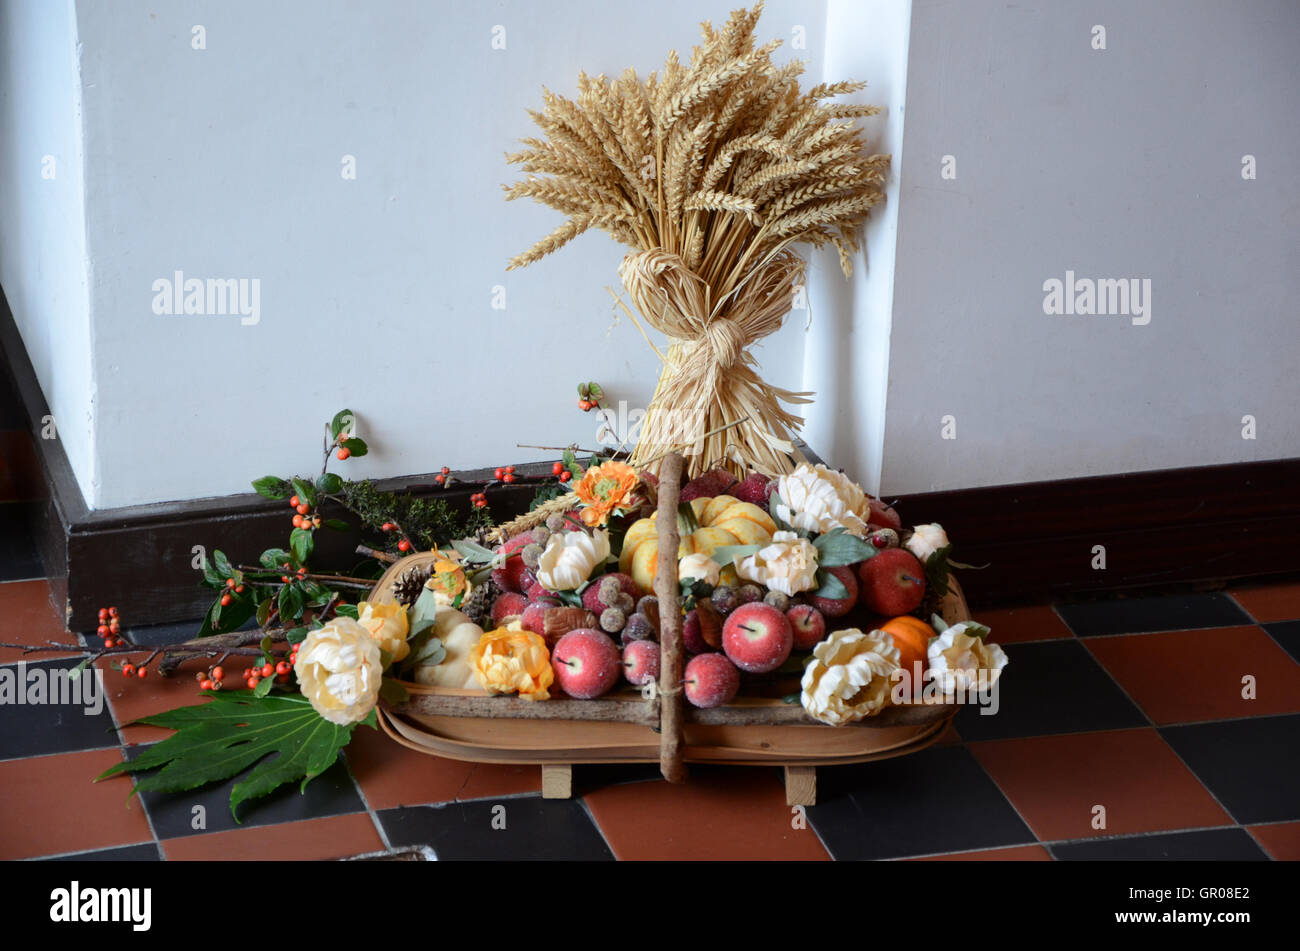 Portrush , Irlande du Nord - le 20 octobre 2013. L'image montre une Église décoration récolte les fruits et fleurs contenant du blé Banque D'Images